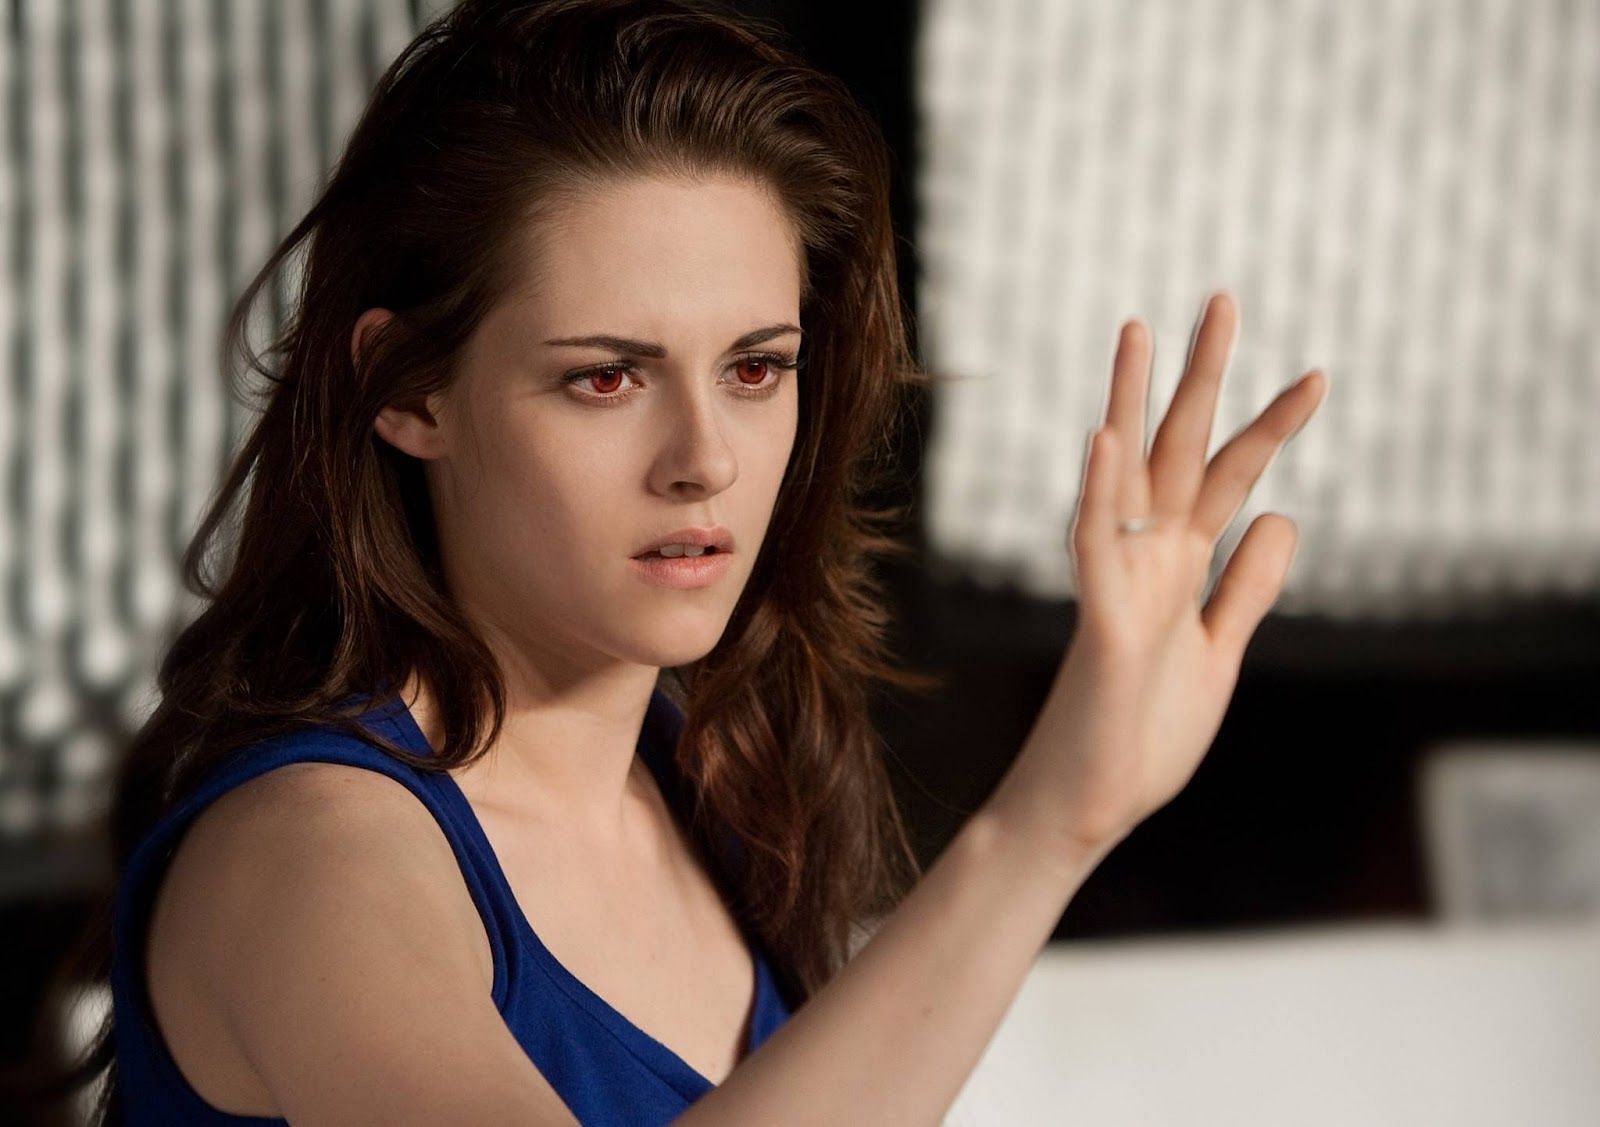 Who is Kristen Stewart in Twilight?